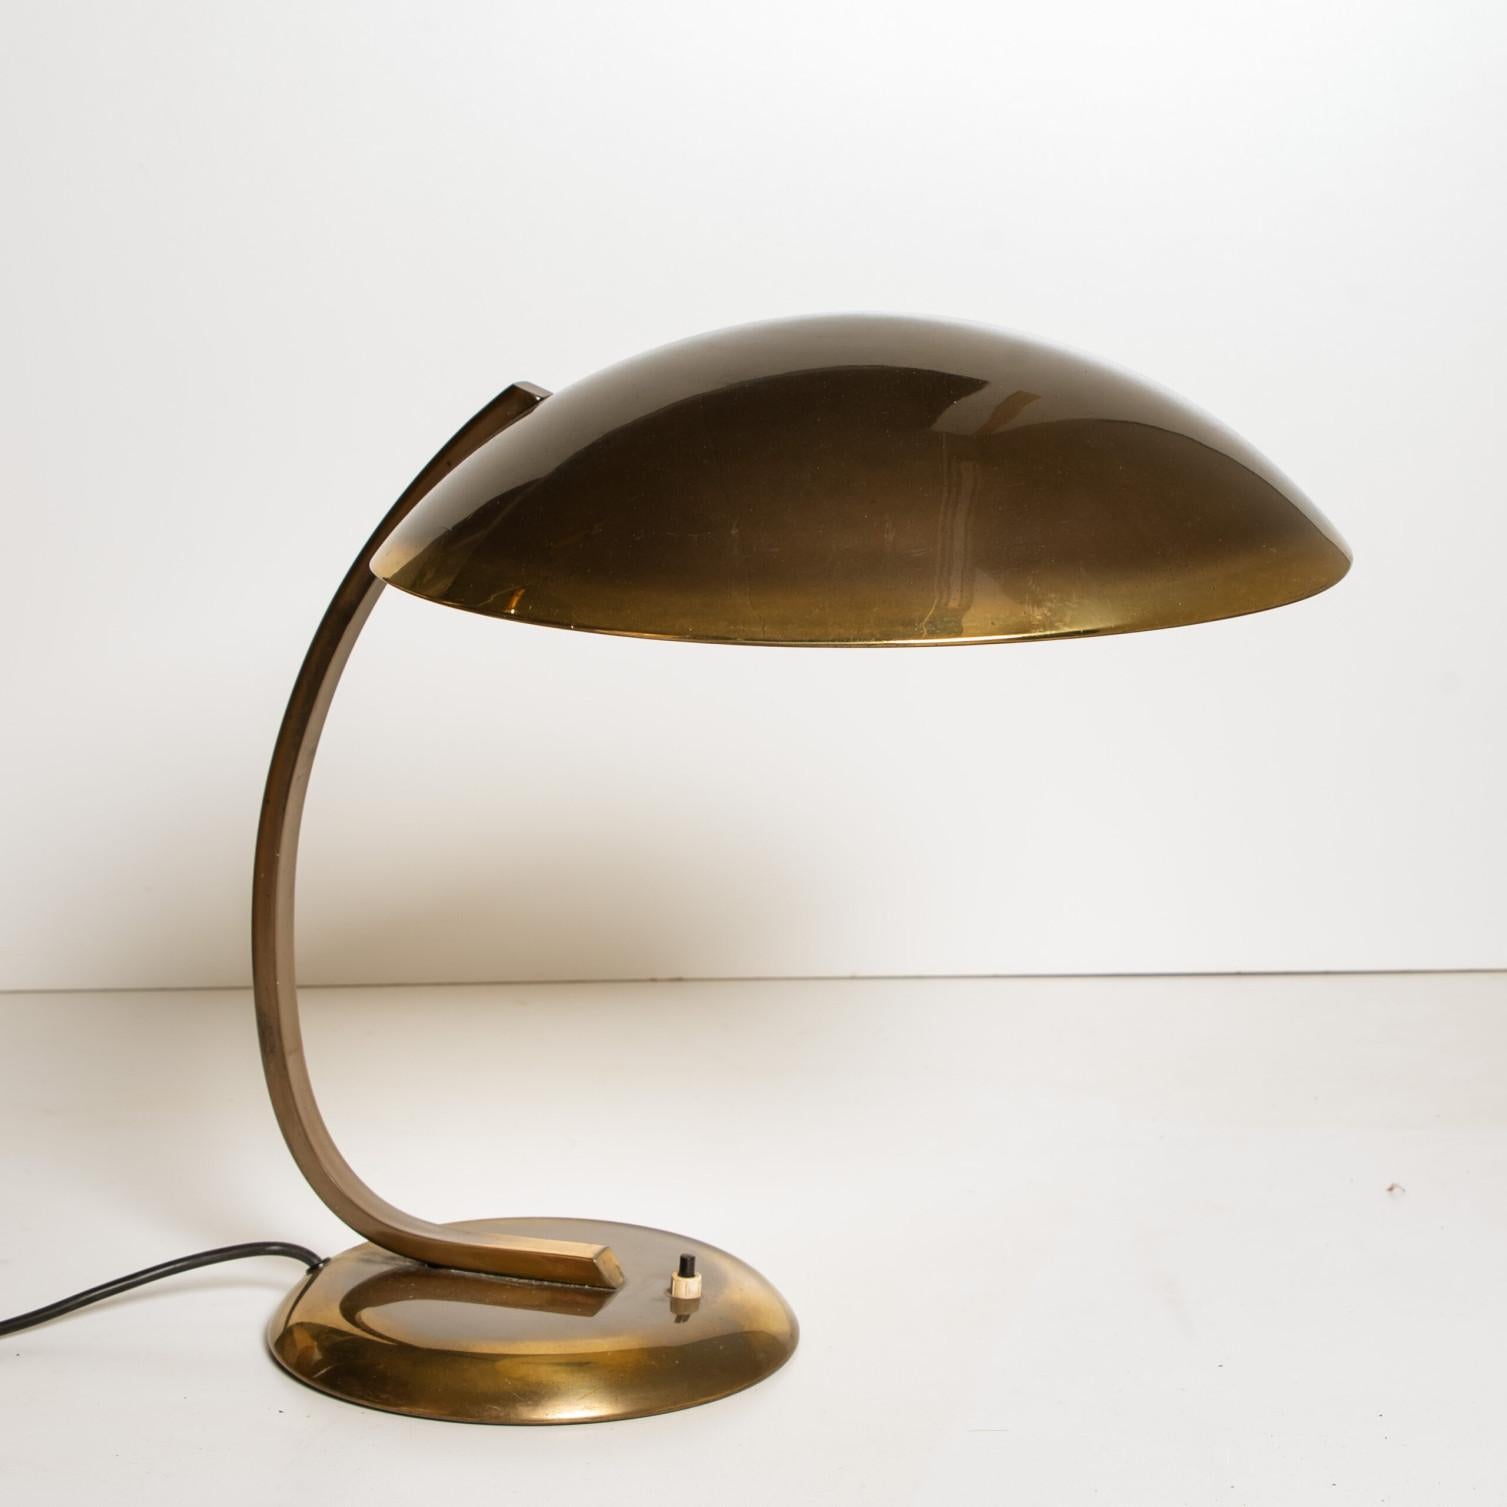 Magnifique lampe de bureau Kaiser Idell en laiton, fabriquée en Allemagne dans les années 1930. Excellent état de propreté et de polissage.
La lampe fonctionne avec une ampoule à vis E27 Edison sur 220V comme sur 110V.

De grande qualité, en bon